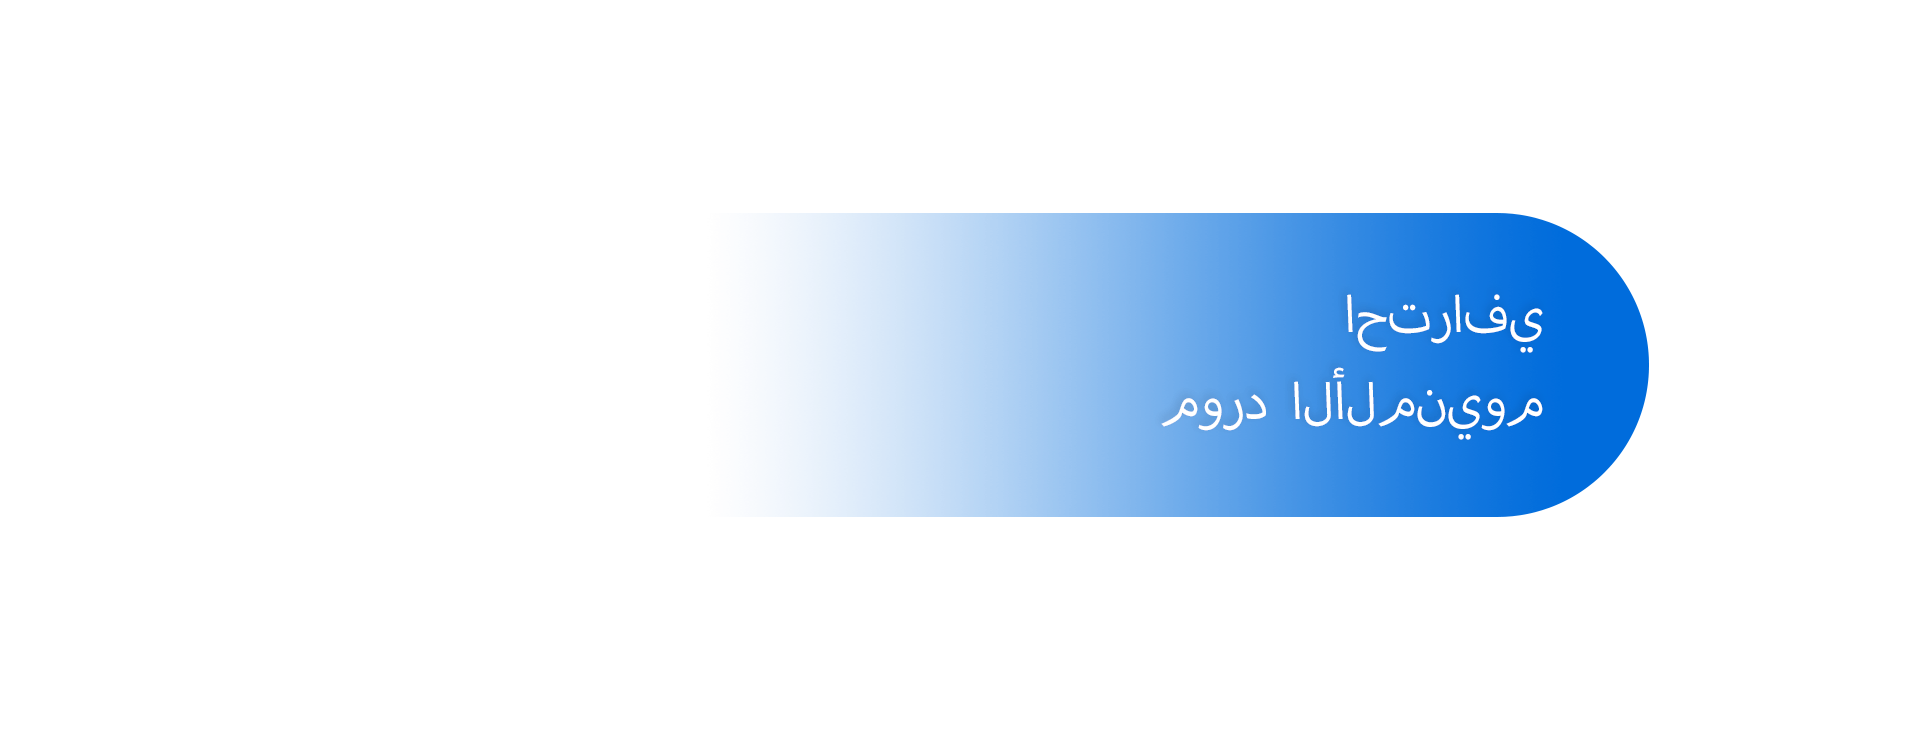 阿拉伯语1